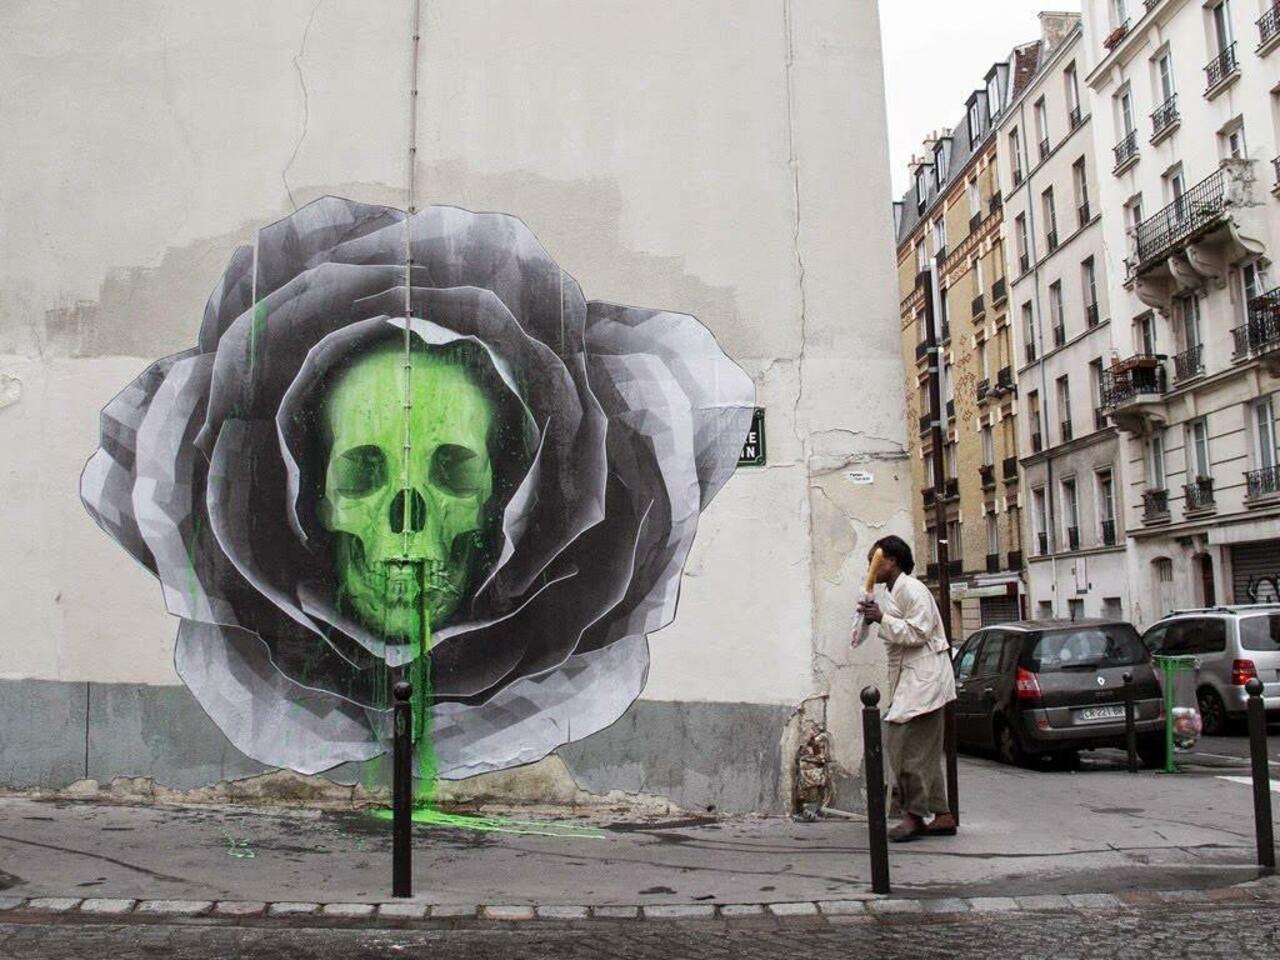 RT @QueGraffiti: Artista: Ludo 
París, Francia
#art #streetart #mural #graffiti http://t.co/g2tm8DpdhI